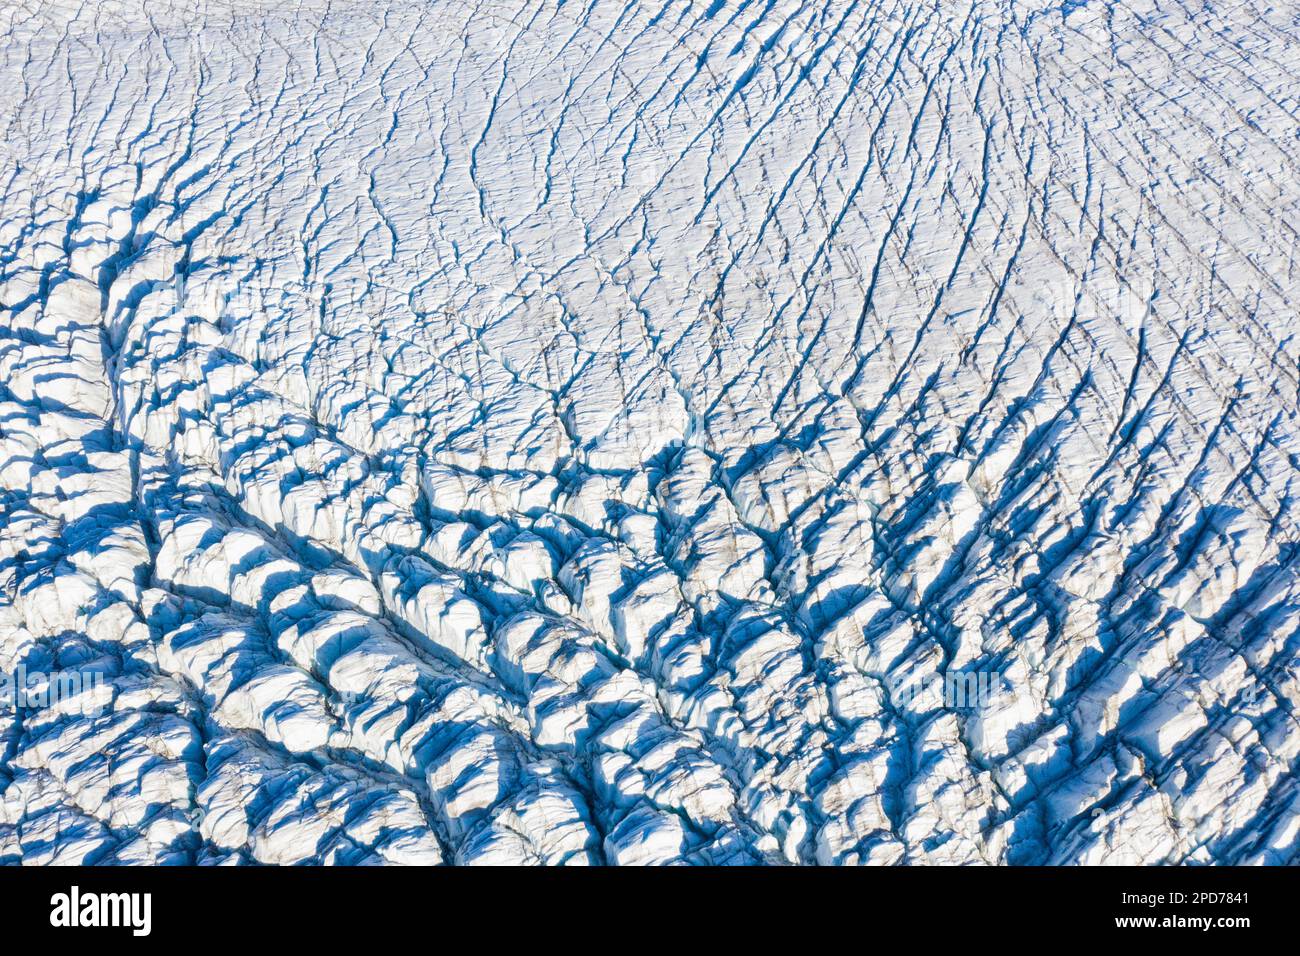 Blick aus der Vogelperspektive auf Seraken und Spalten auf Recherchebreen, Gletscher im Wedel Jarlsberg Land, der sich in den Recherche Fjord in Spitsbergen/Svalbard einklinkt Stockfoto